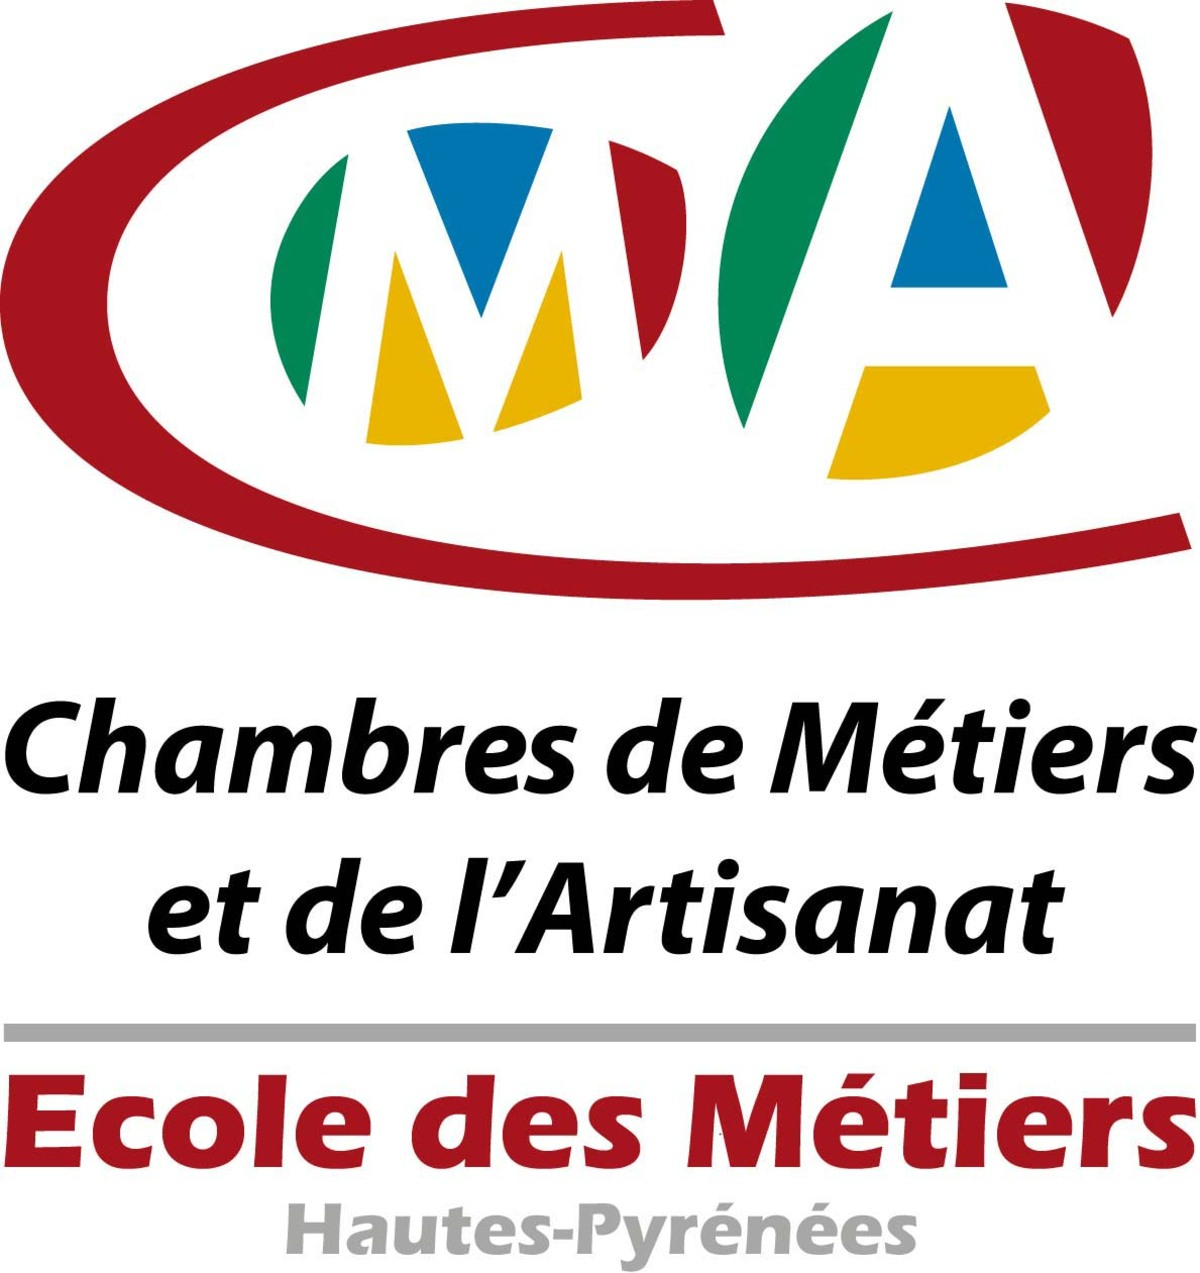 École Des Métiers - Cma Hautes-Pyrénées concernant Chambre Des Metiers Tarbes